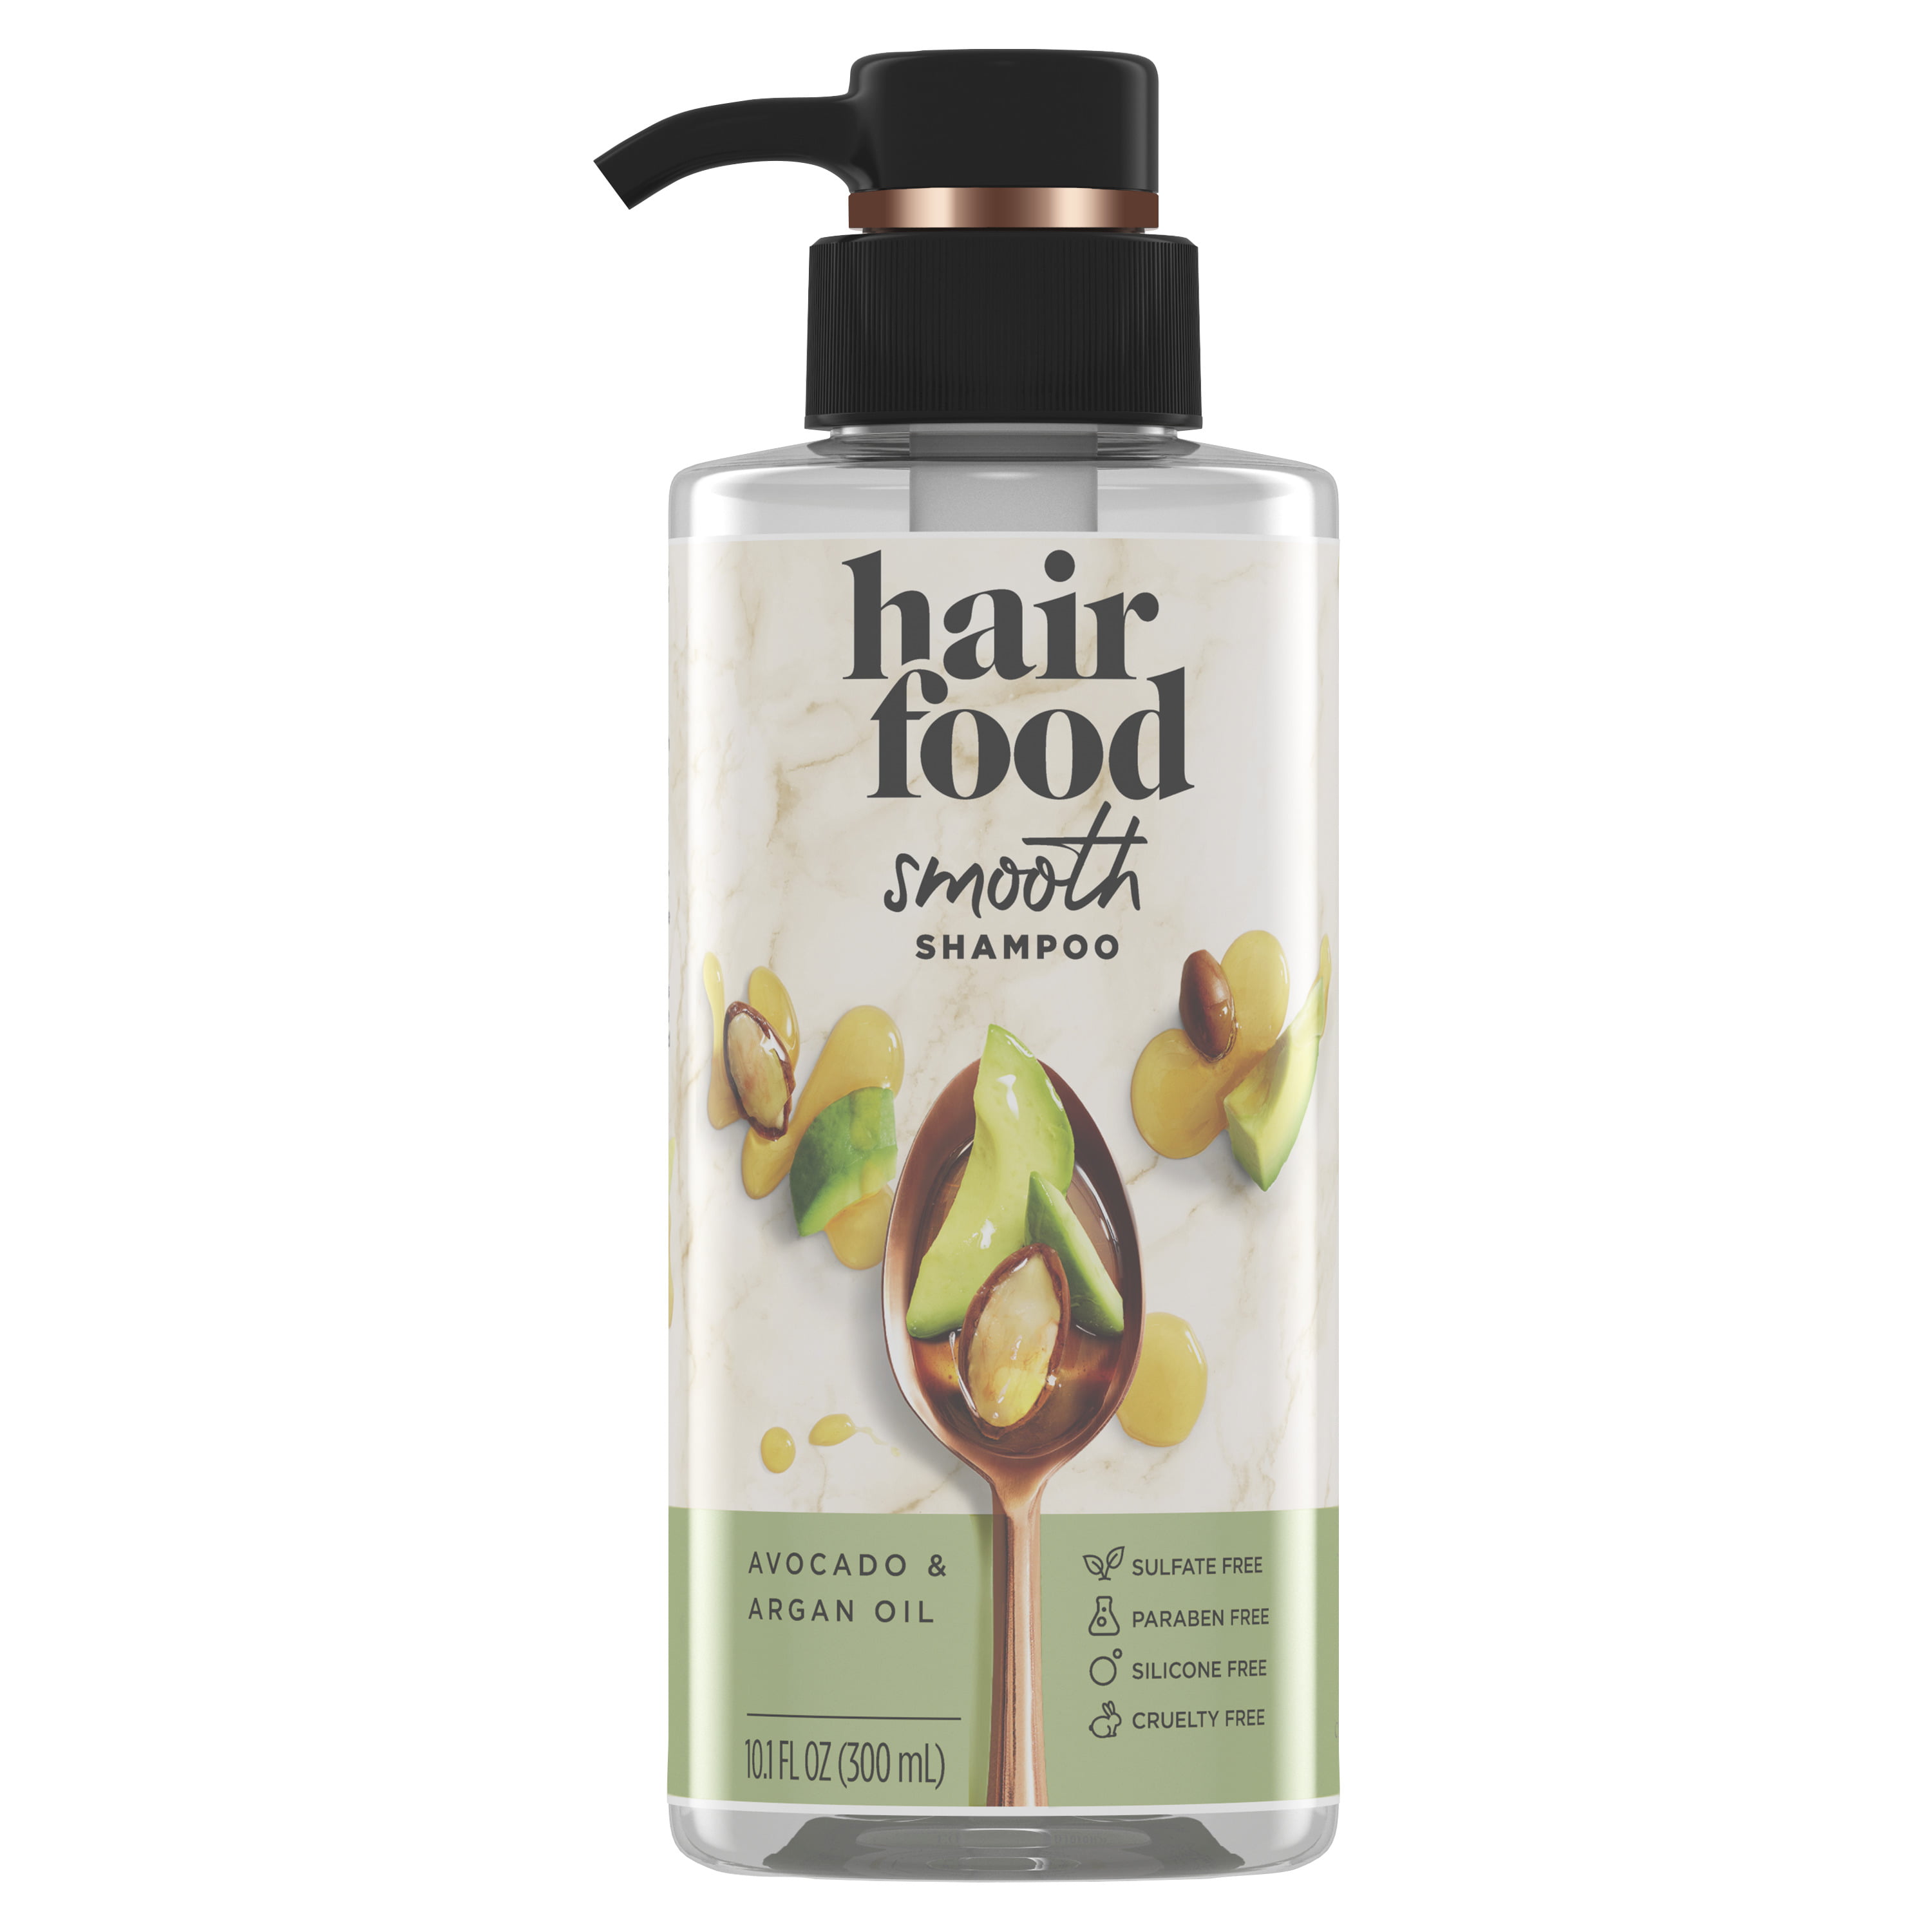 Hair Food Smooth Shampoo, Avocado Argan Oil, Sulfate Free, 10.1 fl oz ...